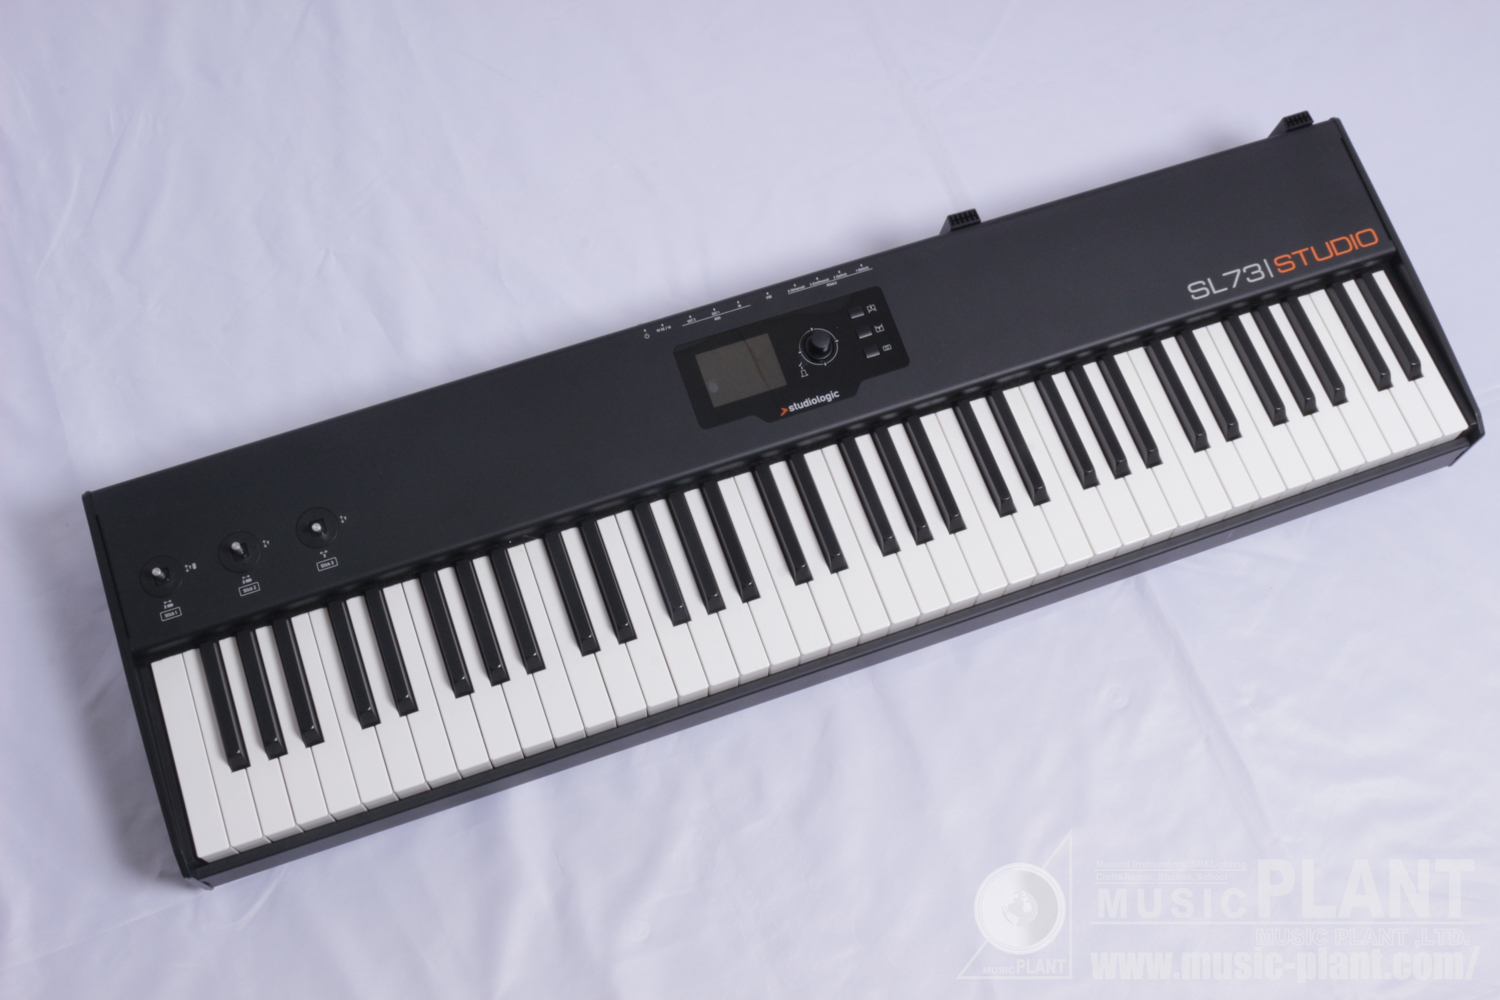 【高性能】Studiologic SL73 Studio MIDIキーボード ケース付き 鍵盤楽器